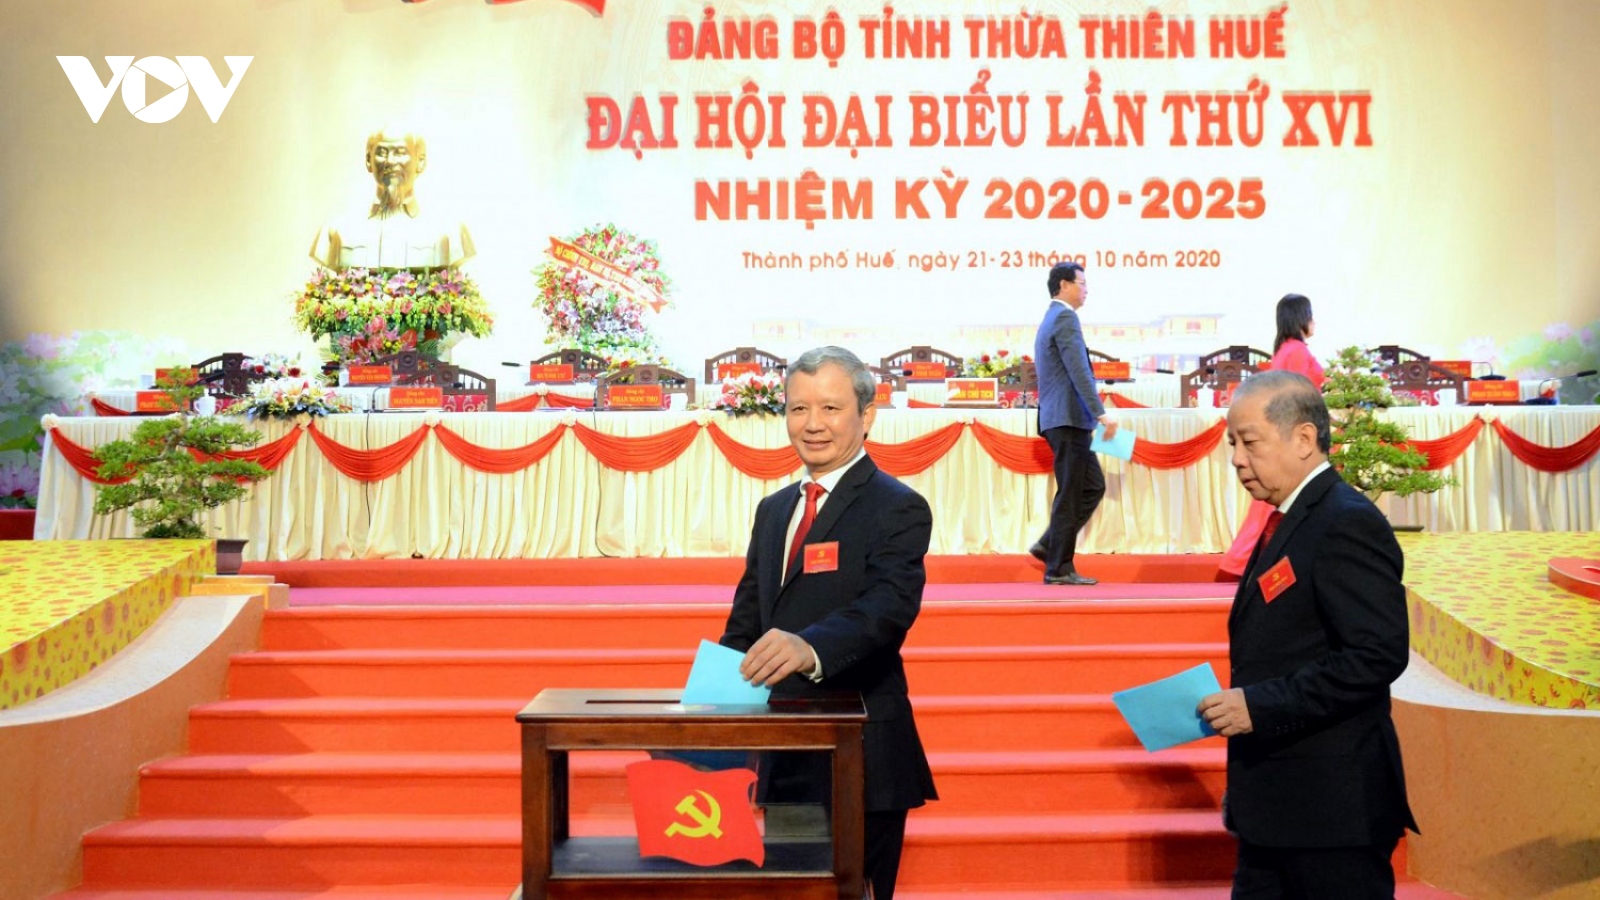 50 người được bầu vào Ban Chấp hành Đảng bộ tỉnh Thừa Thiên Huế